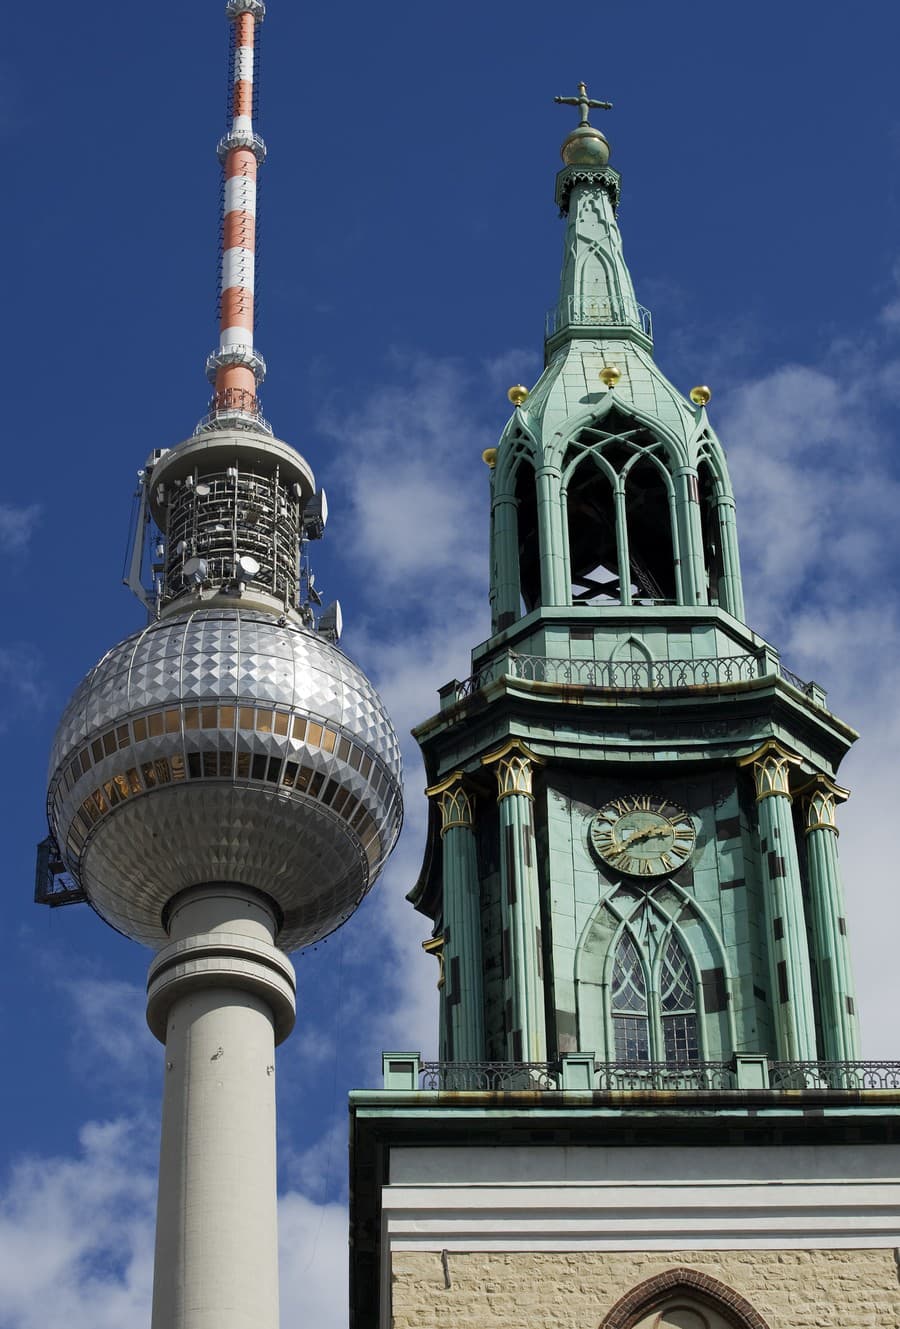 Berlínska televízna veža: Pomstil